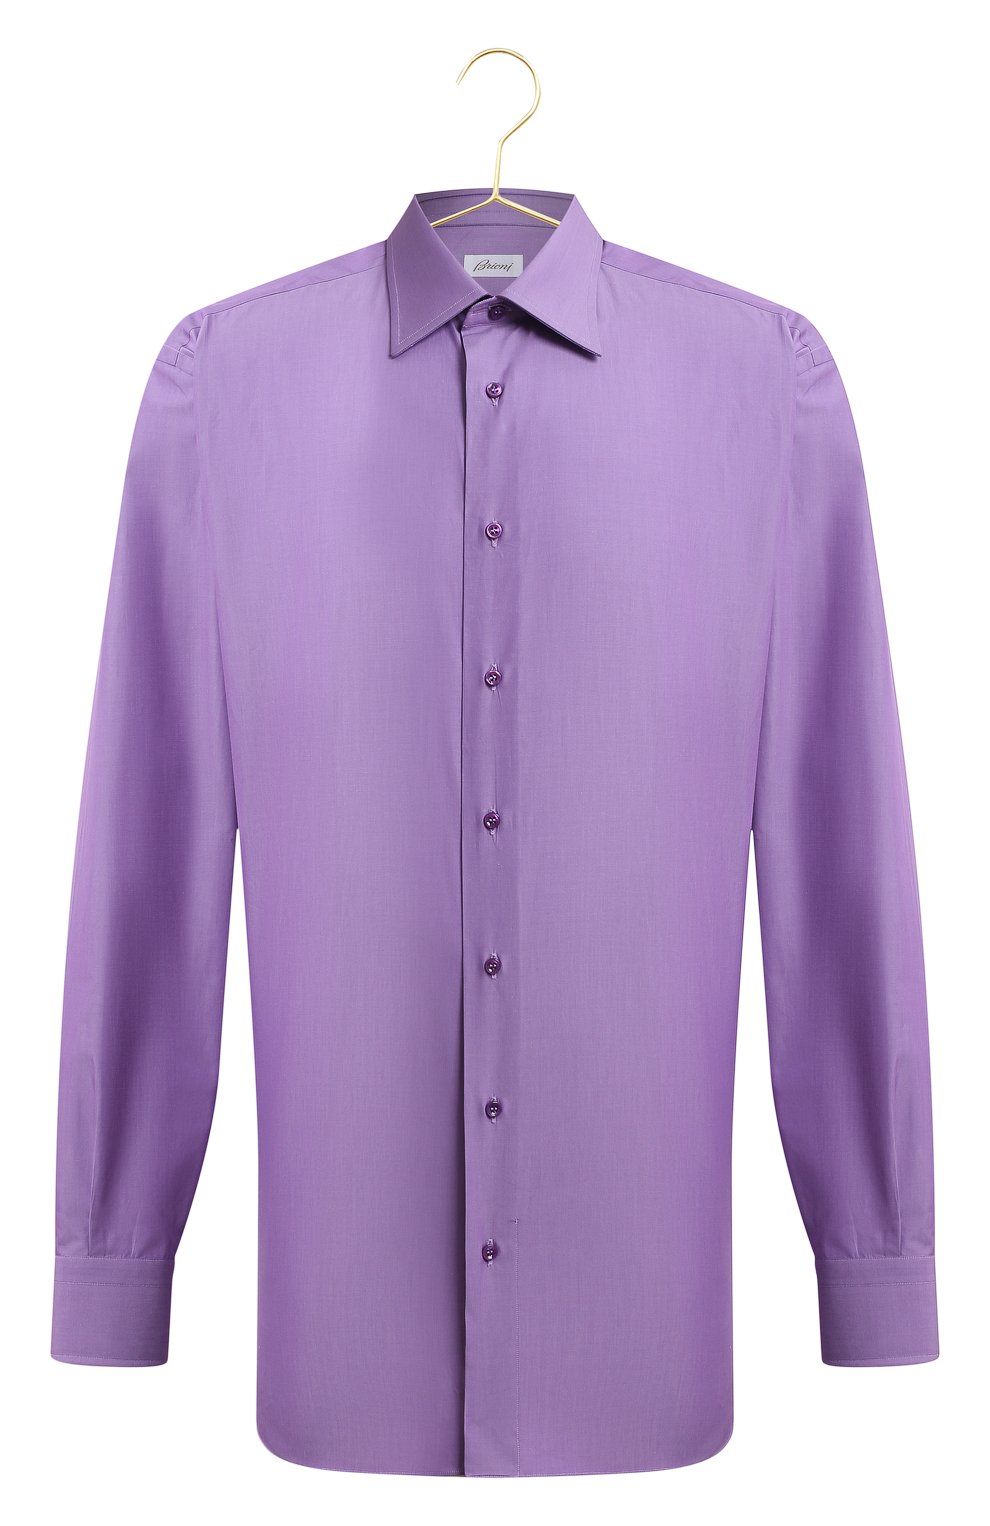 Хлопковая сорочка | Brioni | Фиолетовый - 1